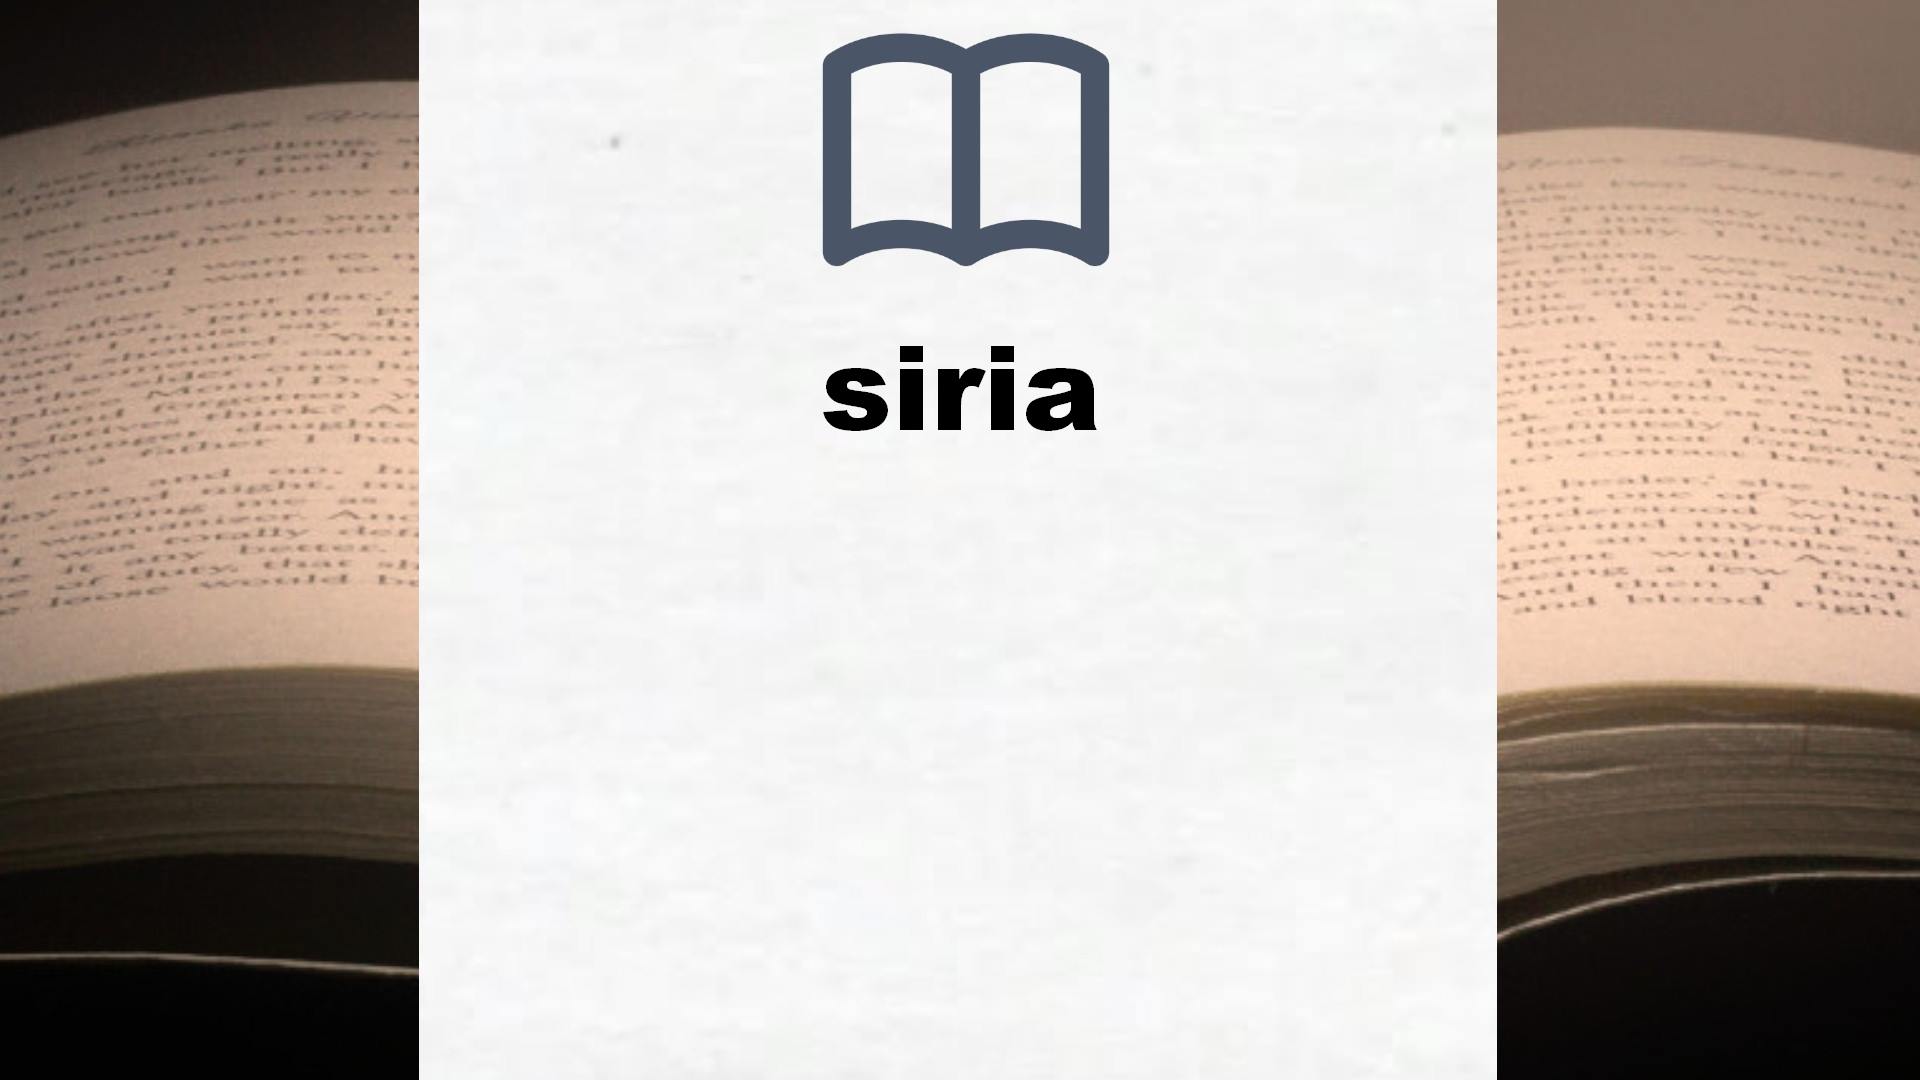 Libros sobre siria